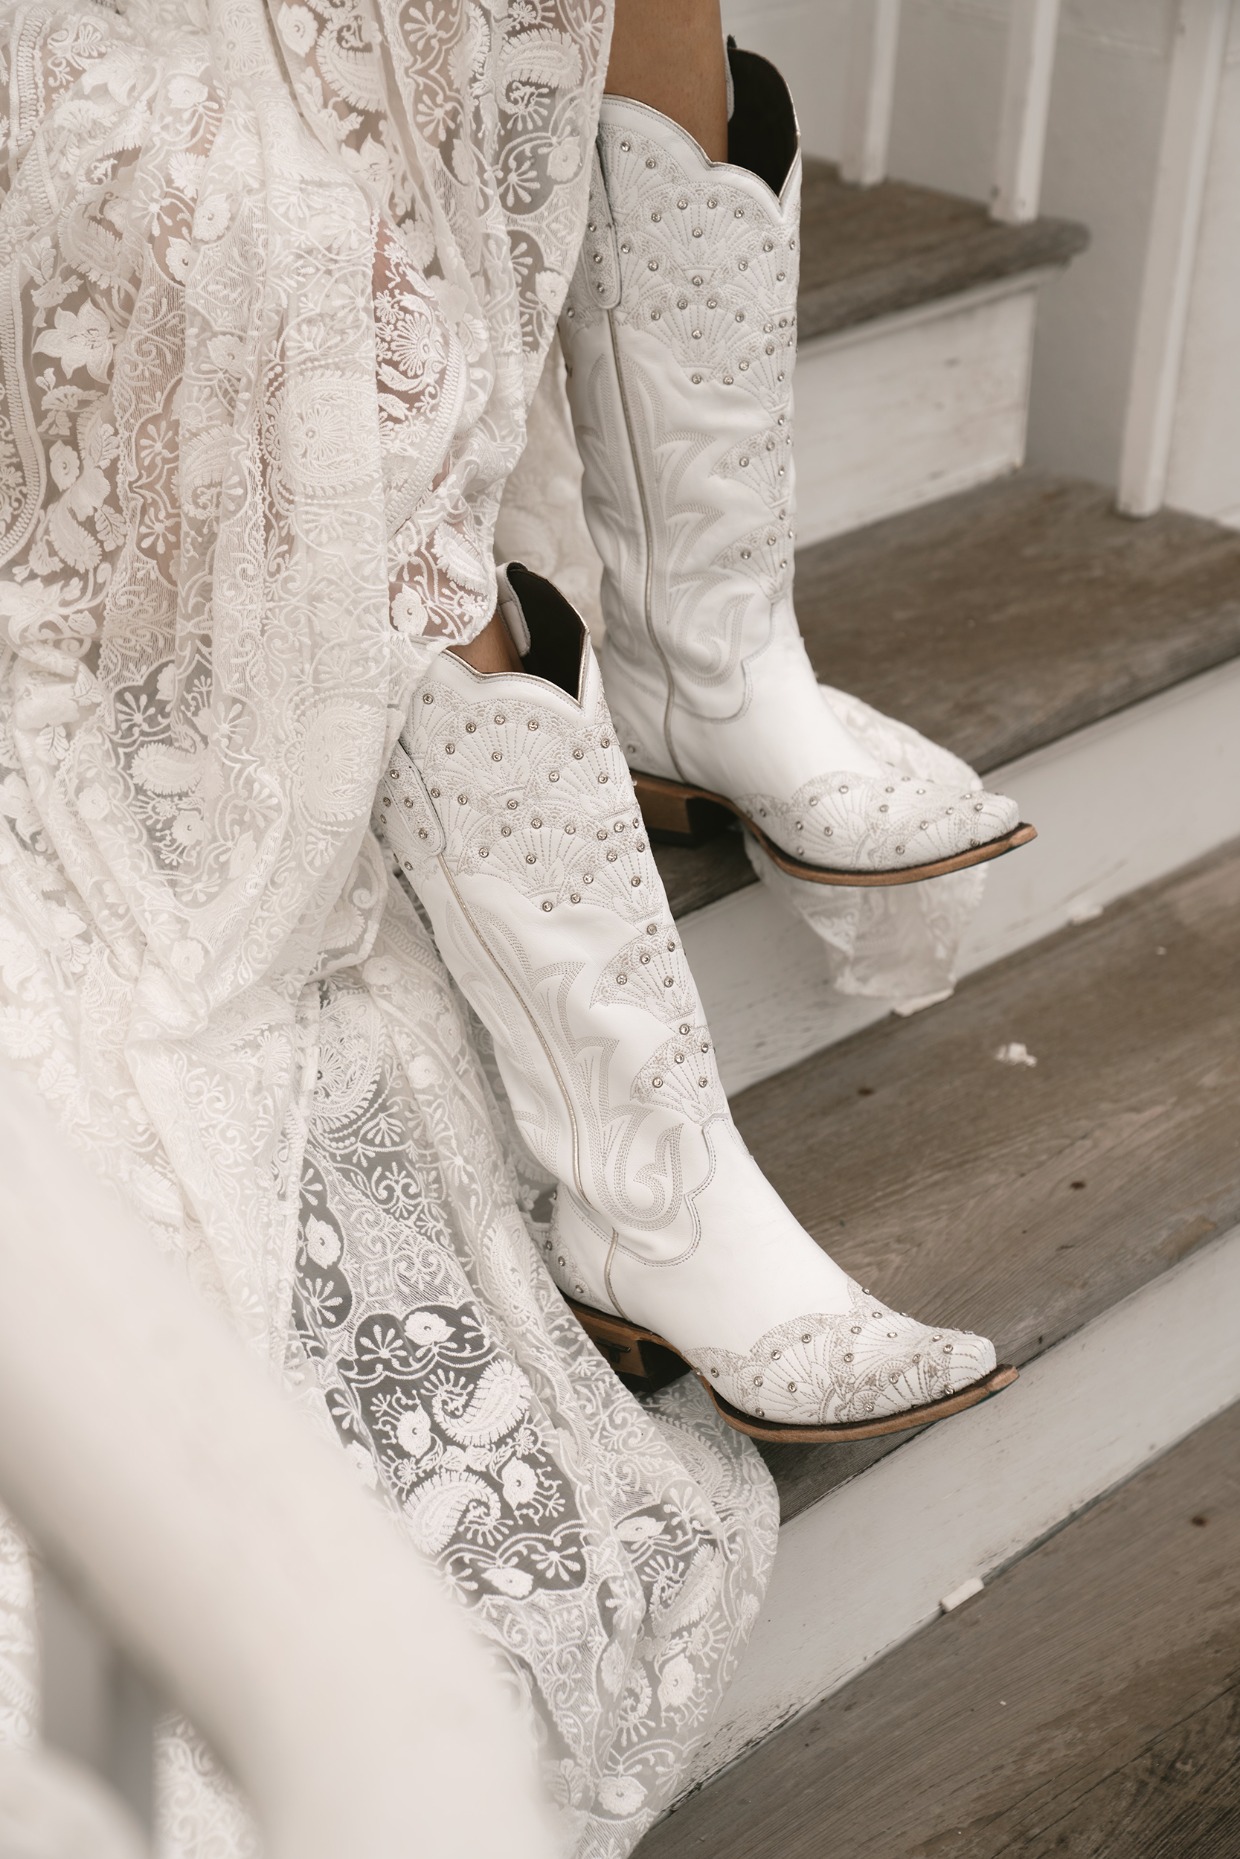 Boot Barn wedding boots